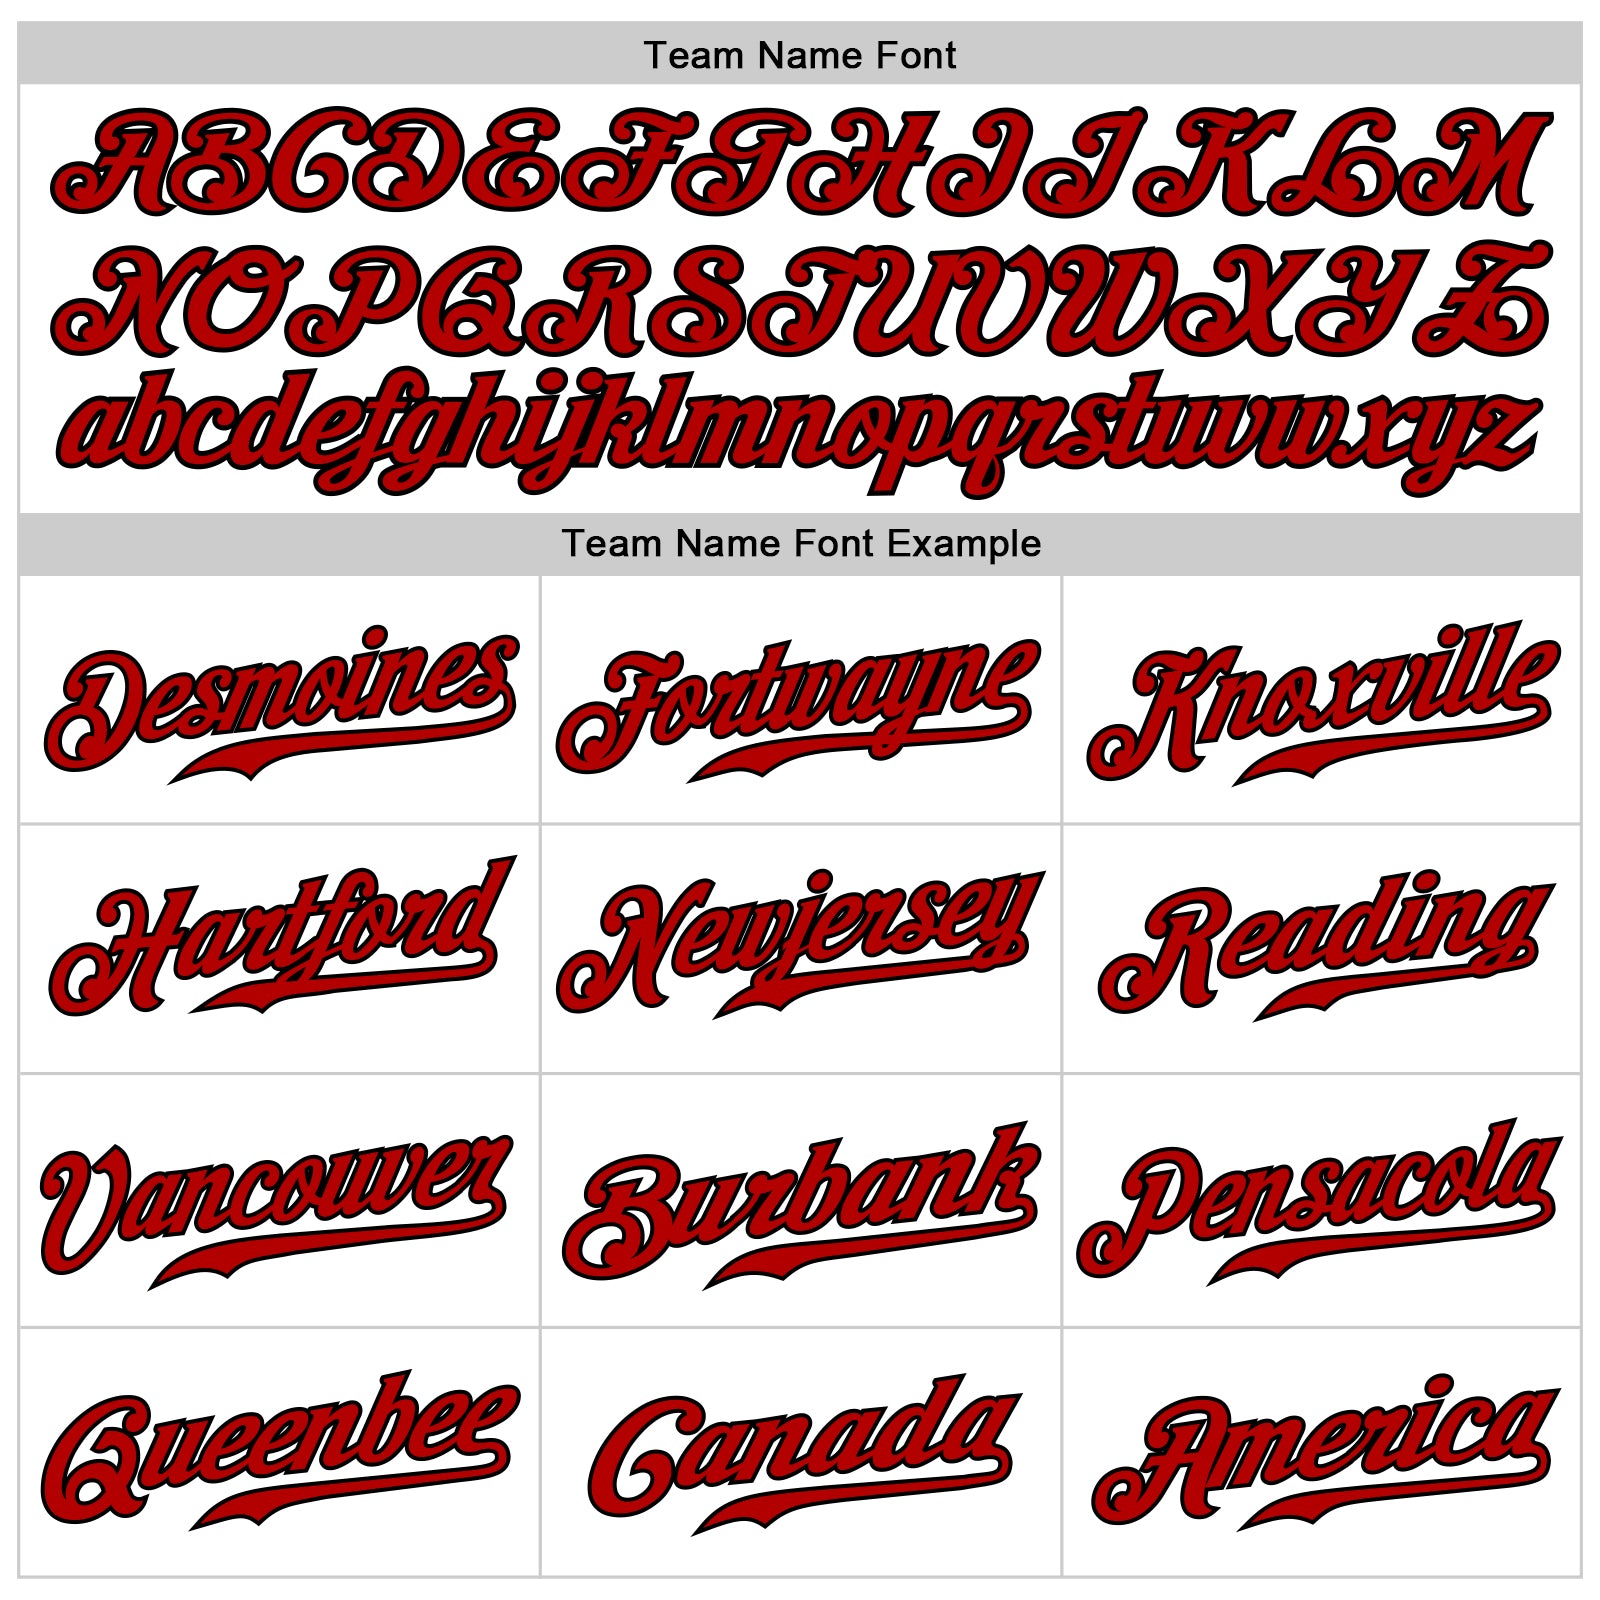 Custom-White-Red-Black-Sleeveless-Baseball-MLB-Jersey-4974